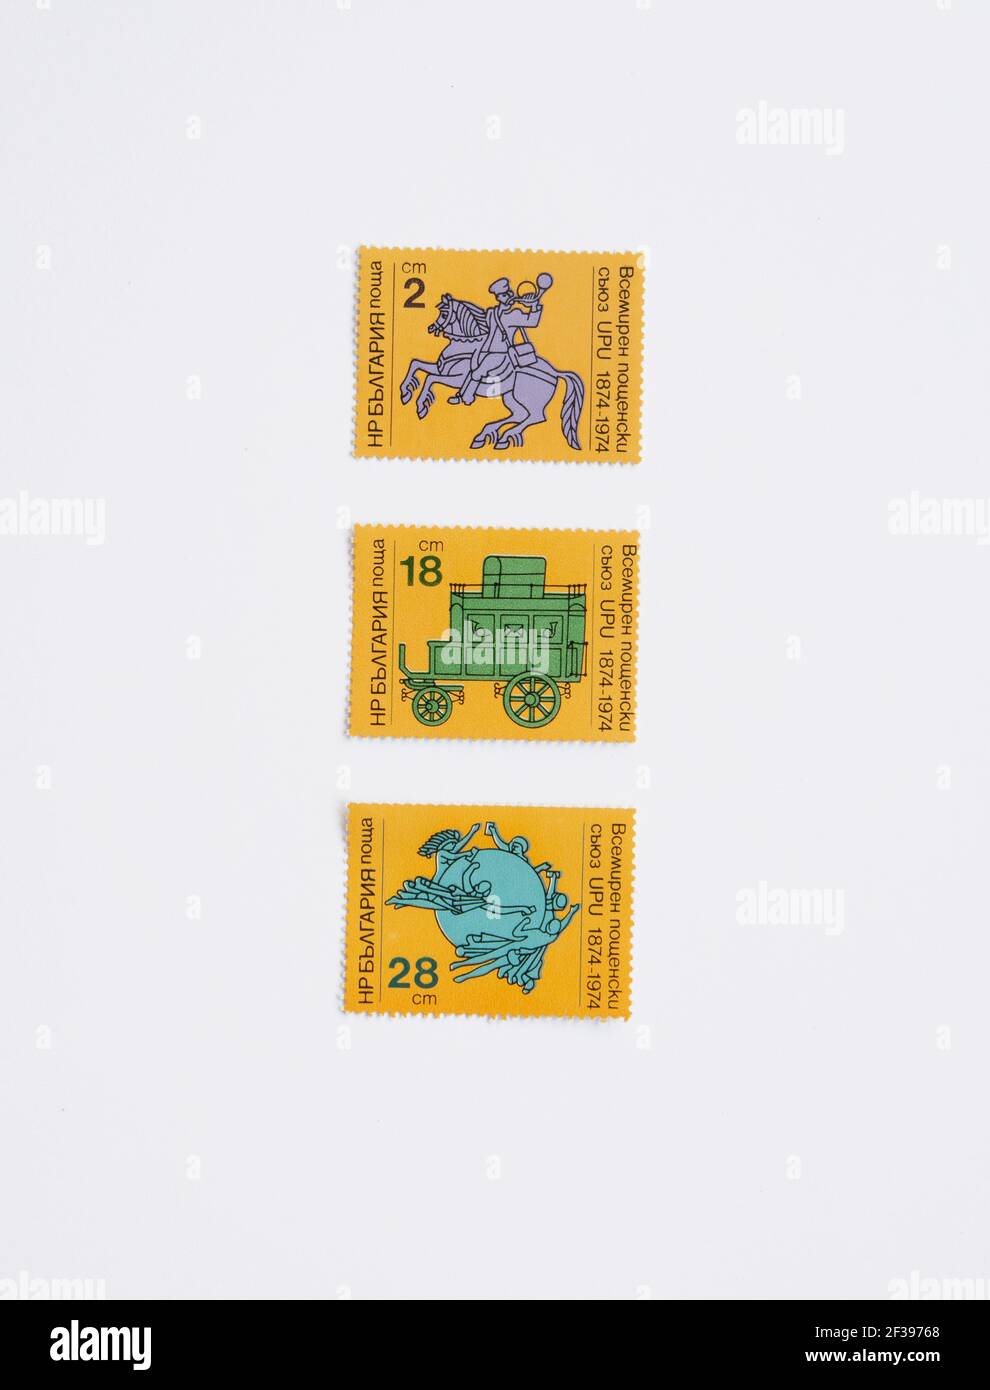 05.03.2021 Istanbul Turchia - francobollo stampato in Bulgaria rilasciato per il centenario della UPU mostra il 19 ° secolo Postman, circa 1974. Unione postale universale. Foto Stock